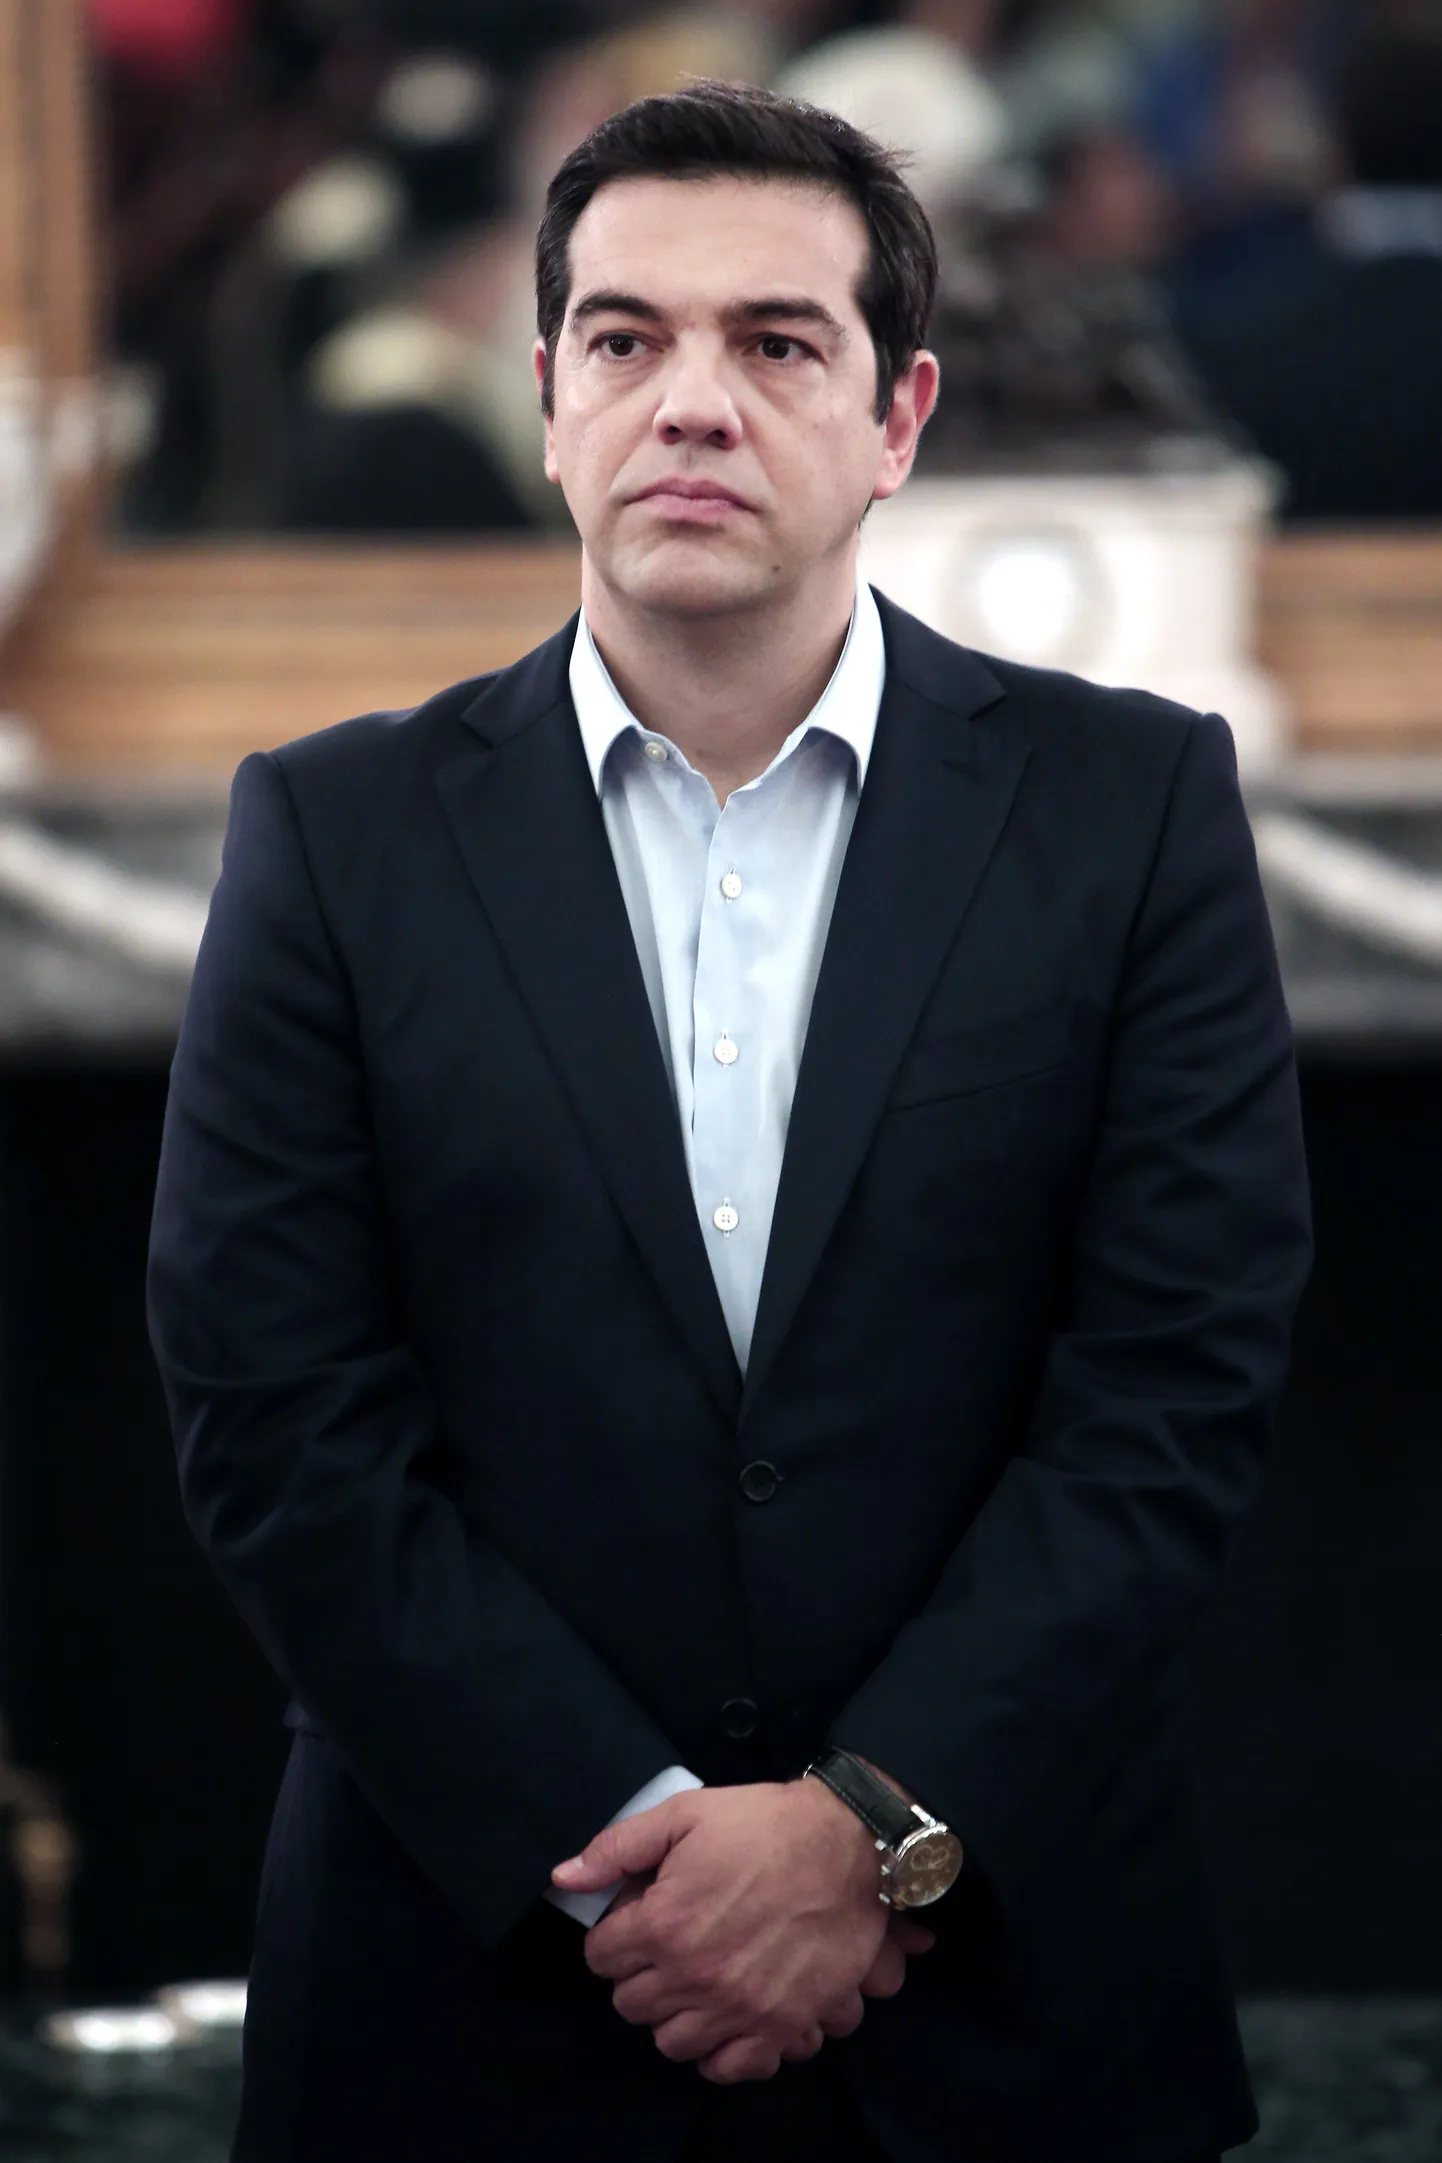 Alexis Tsipras.